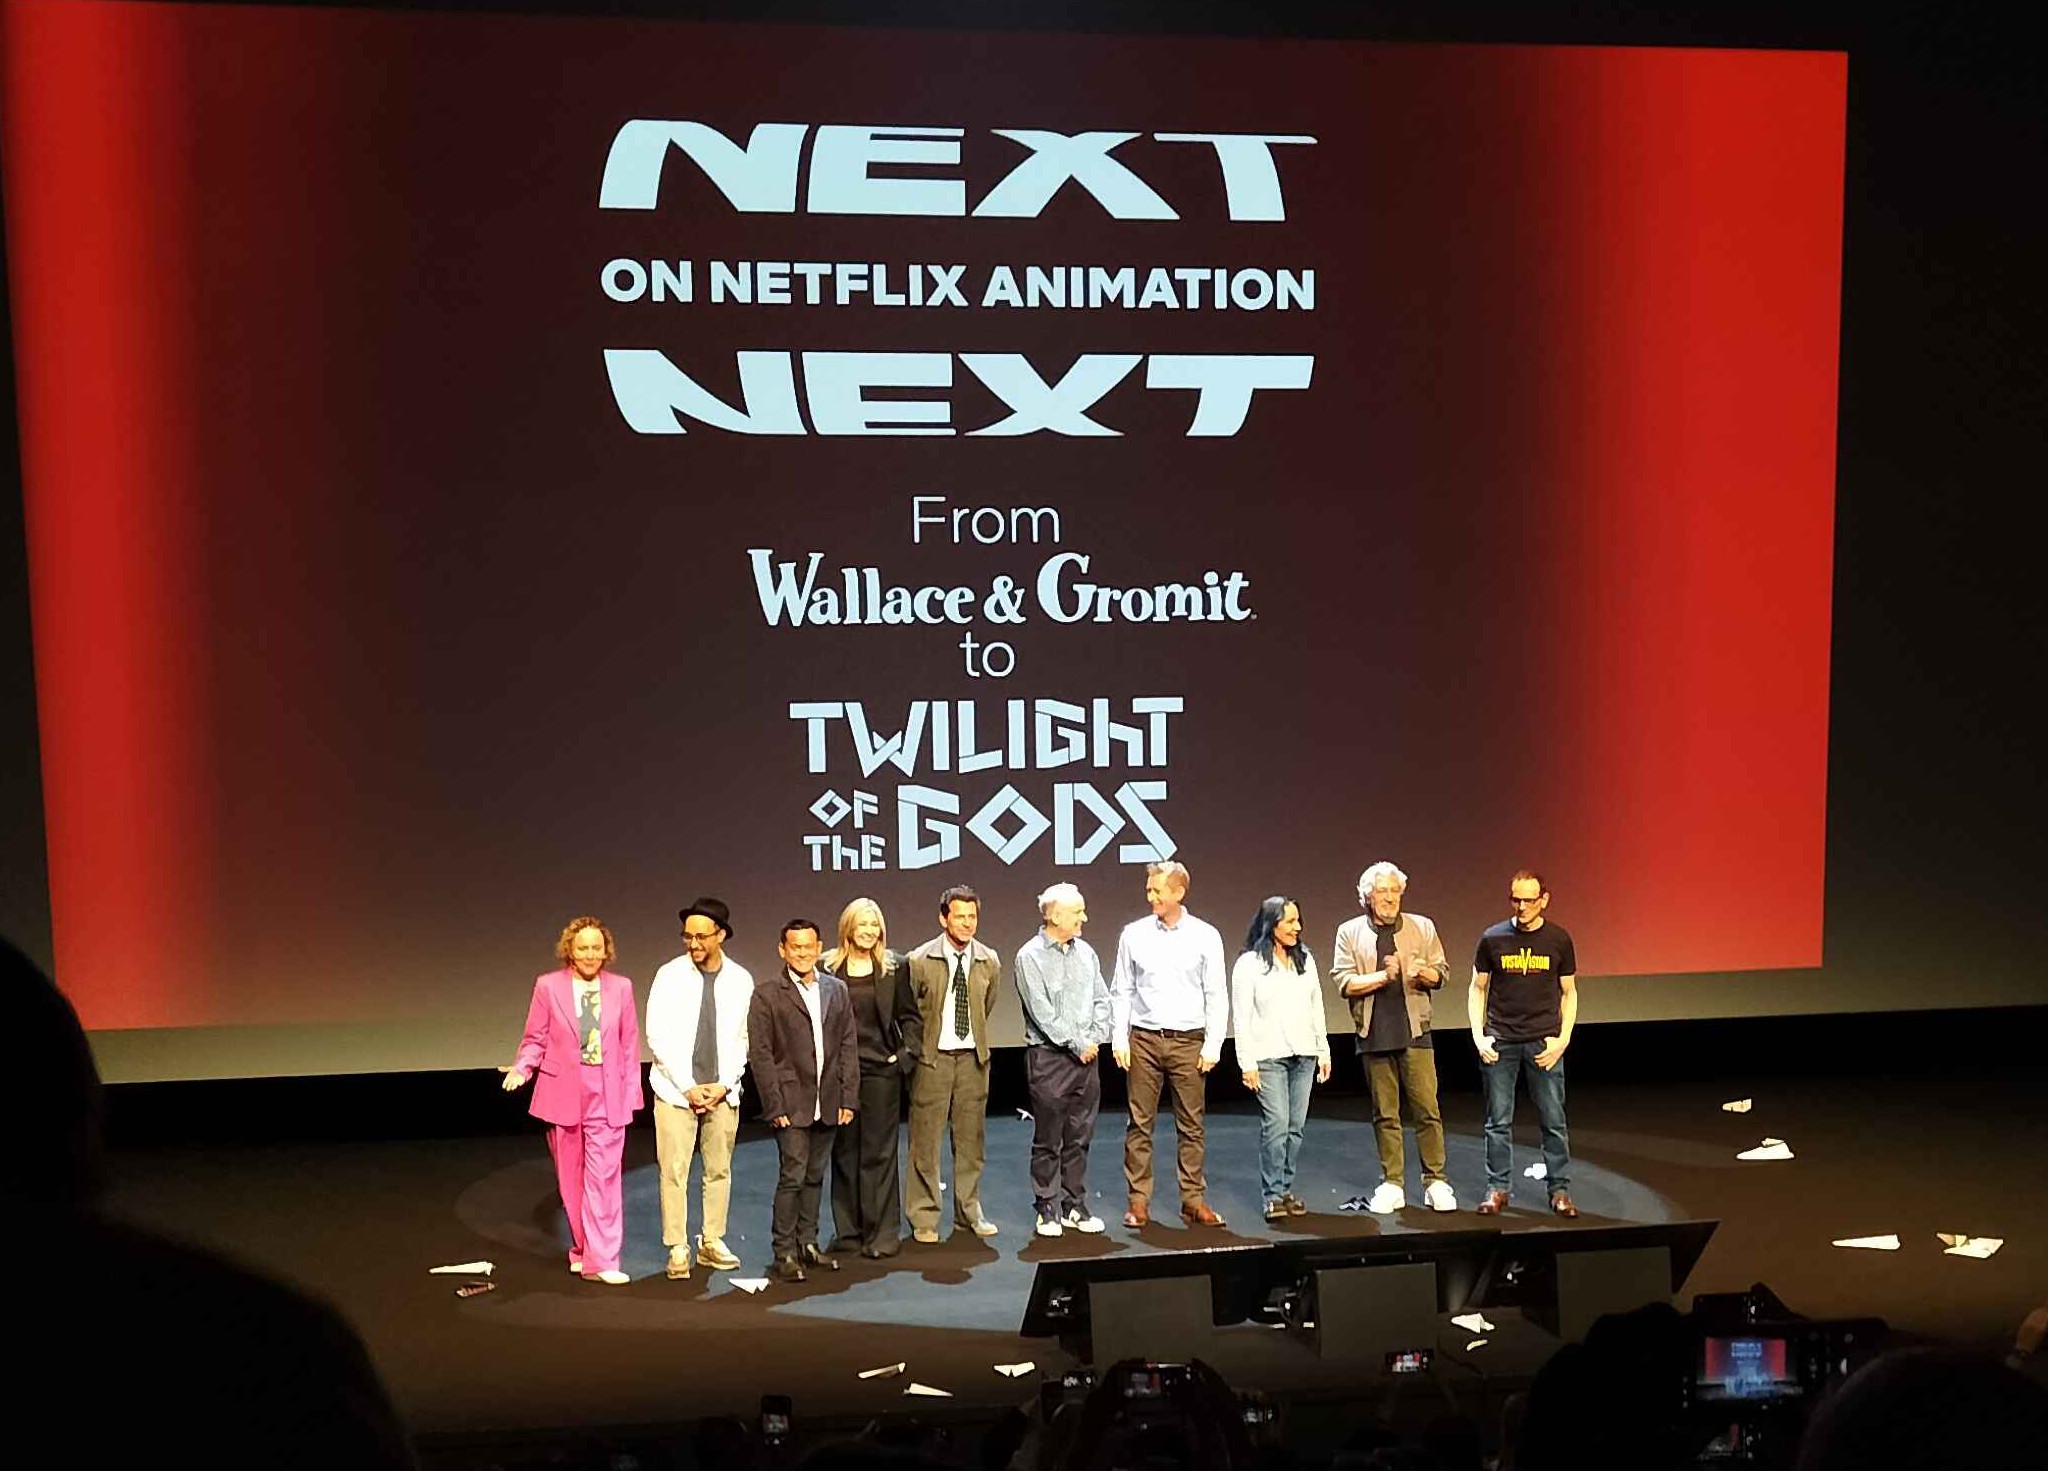 Photo des créateurices sur la scène ; derrière elleux, est inscrit "Next on Netflix animation, from Wallace & Gromit to Twilight of the Gods"